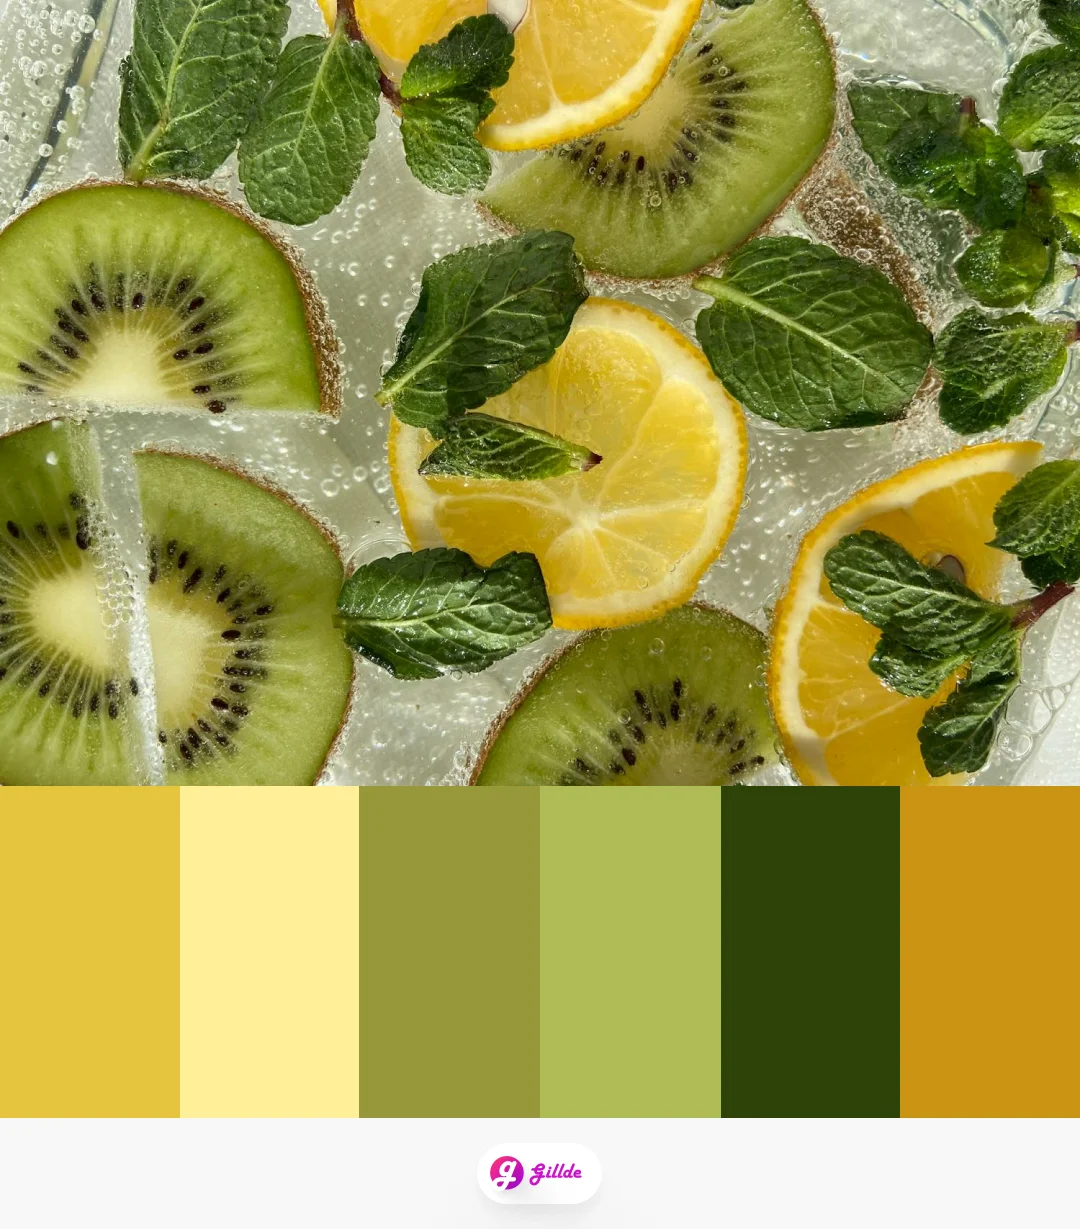 Color palette of summer fruits